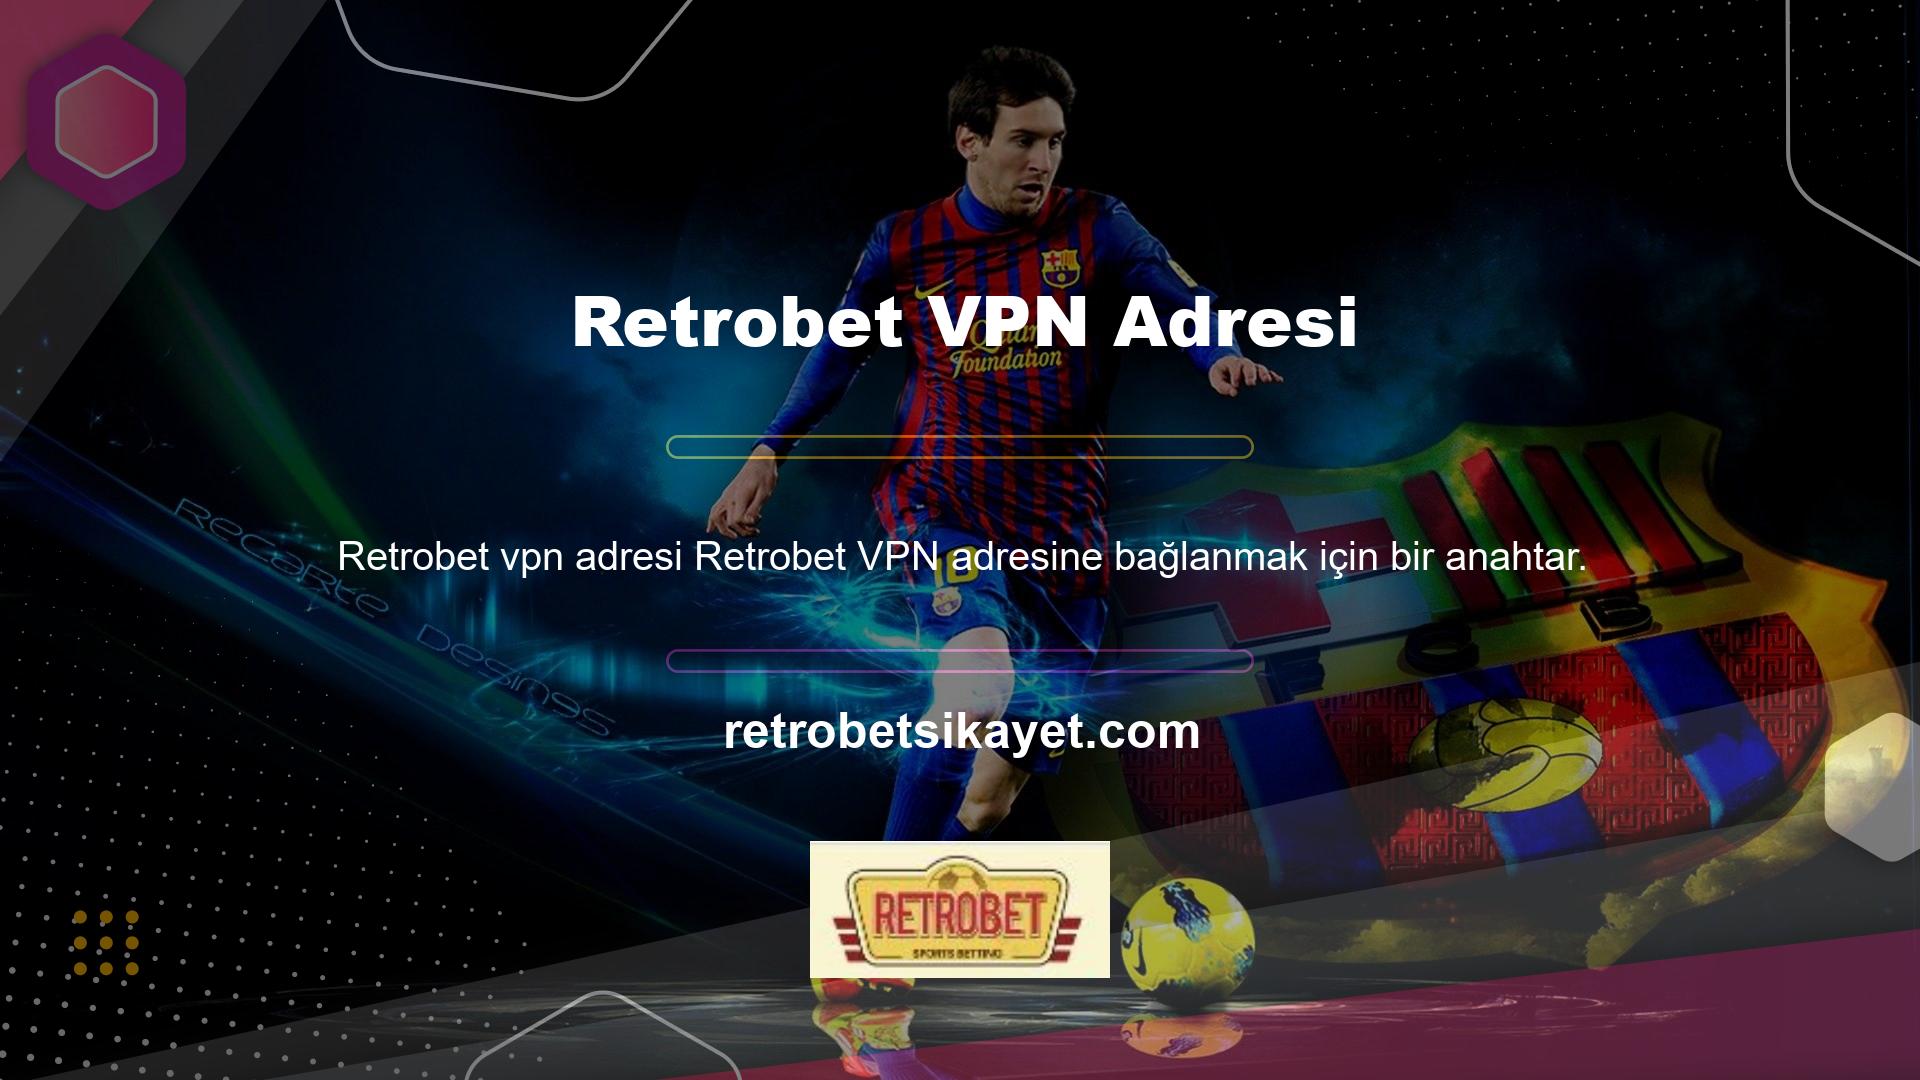 Retrobet VPN adresi kullanıcıların en çok sorduğu sorular arasında yer alıyor